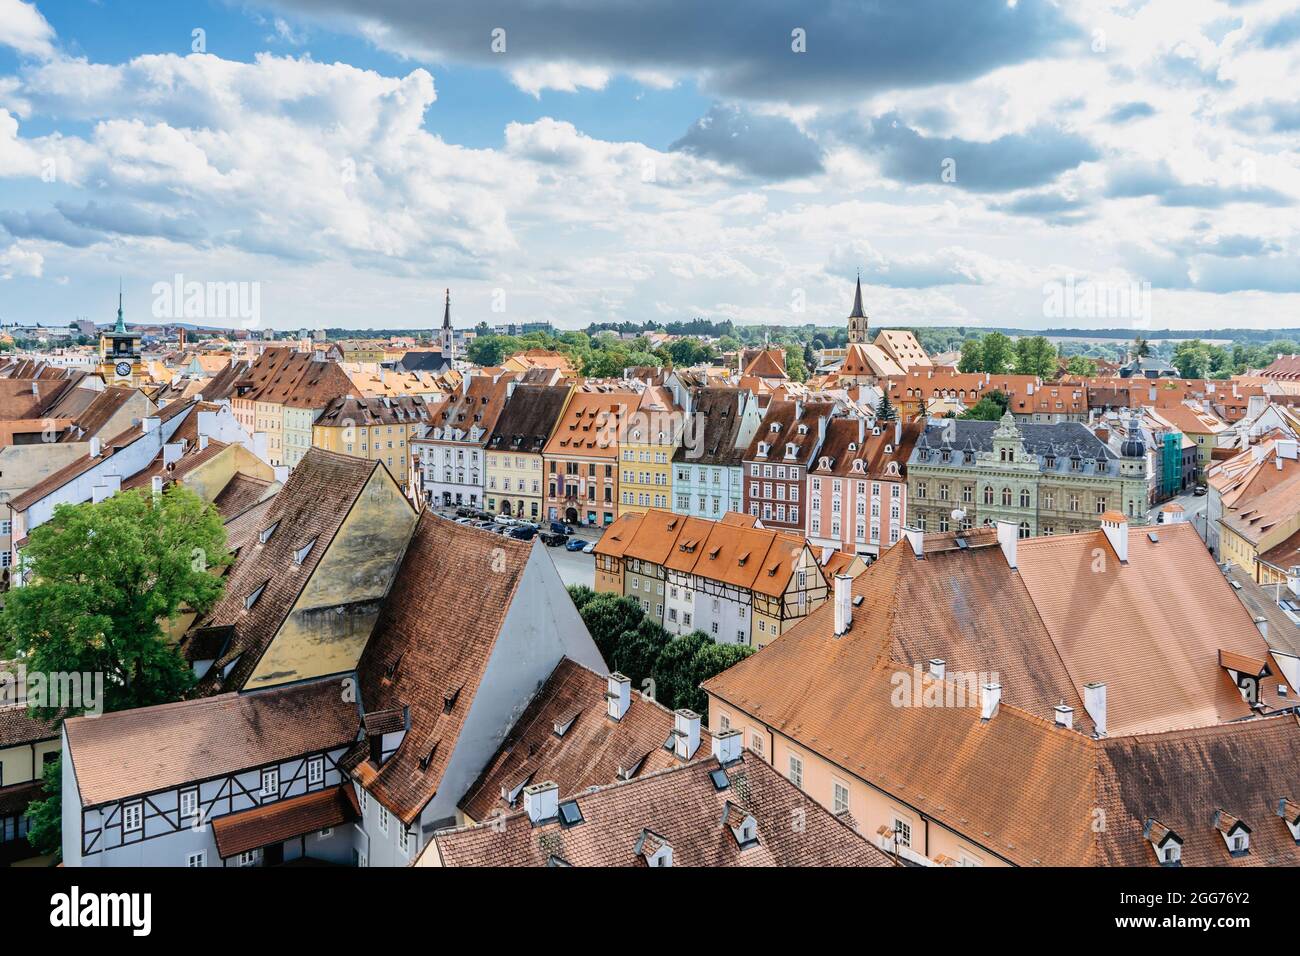 Cheb, Tschechische Republik. Stadt in Westböhmen am Fluss Ohre.Luftpanoramik auf den Marktplatz mit bunten gotischen Häusern aus dem 13. Jahrhundert. Stockfoto